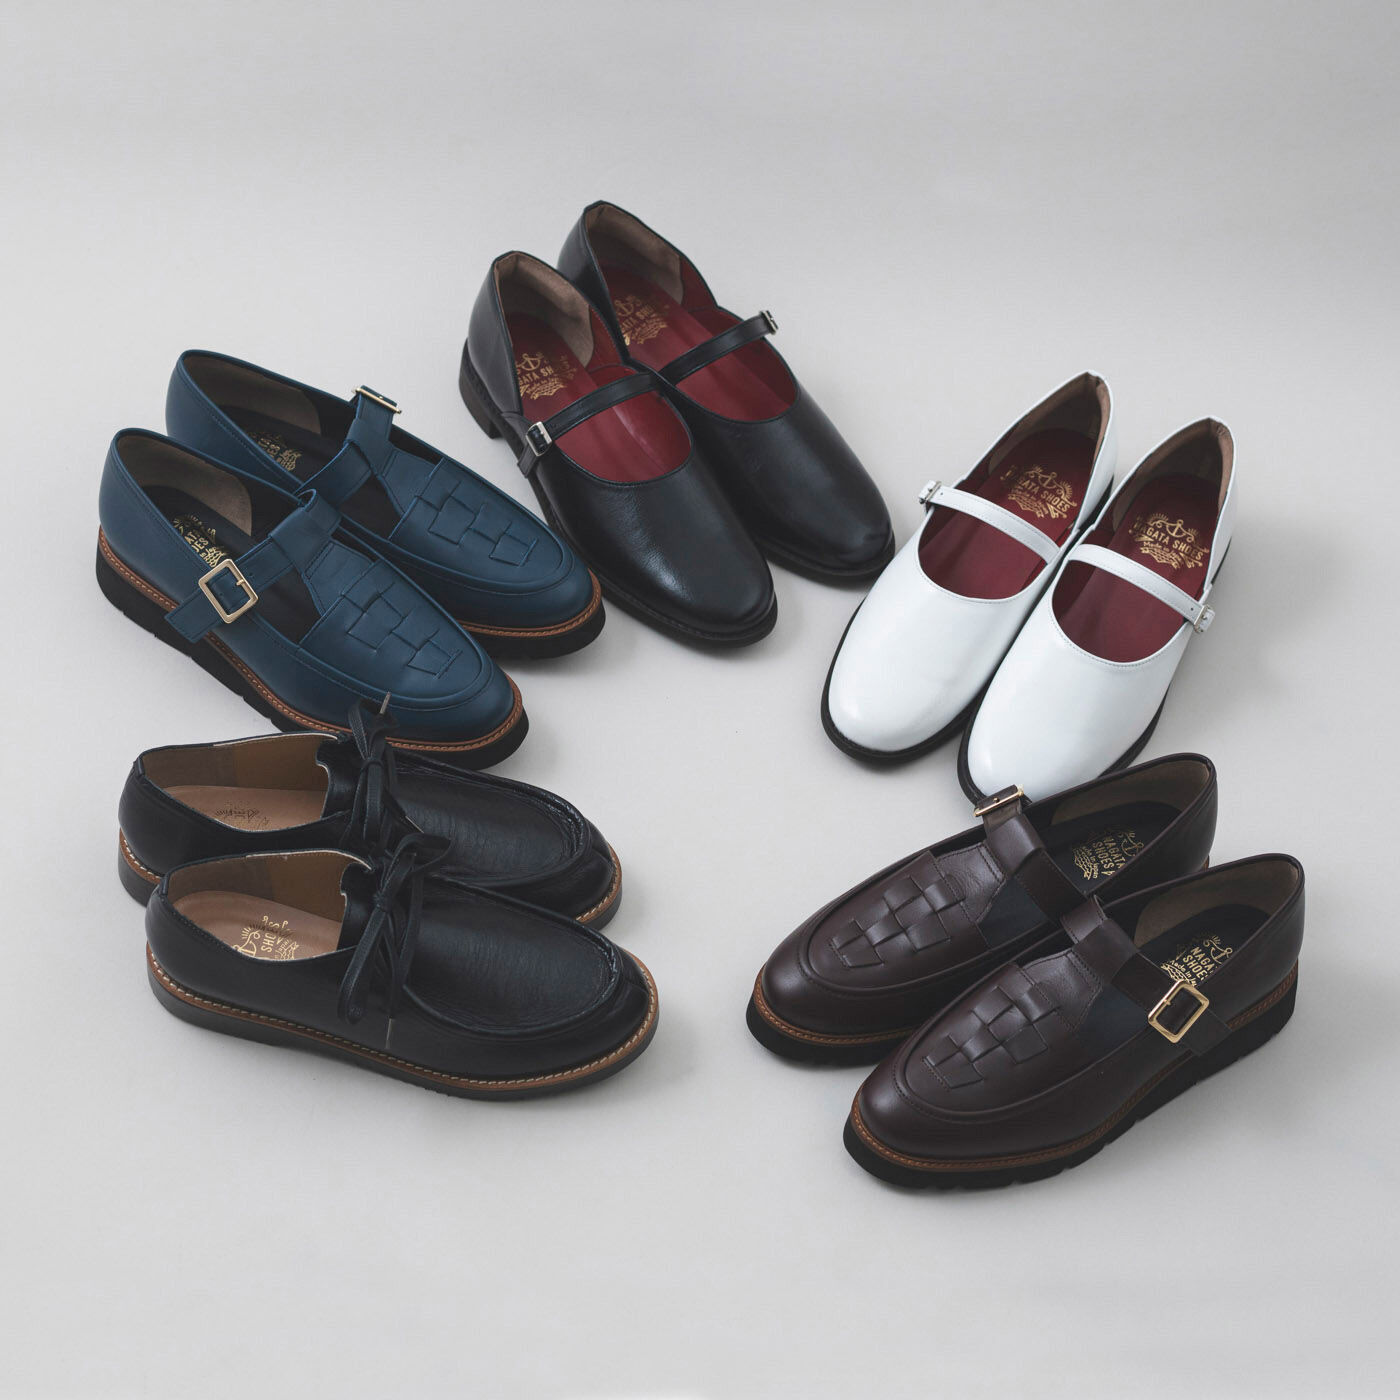 ＆Stories|長田の靴職人が作った 職人本革のモカシンシューズ〈ブラックスピネル〉|春の装いにぴったりな長田の職人が手掛けた革靴たち。あなたに相応しいデザインを見つけてみて。